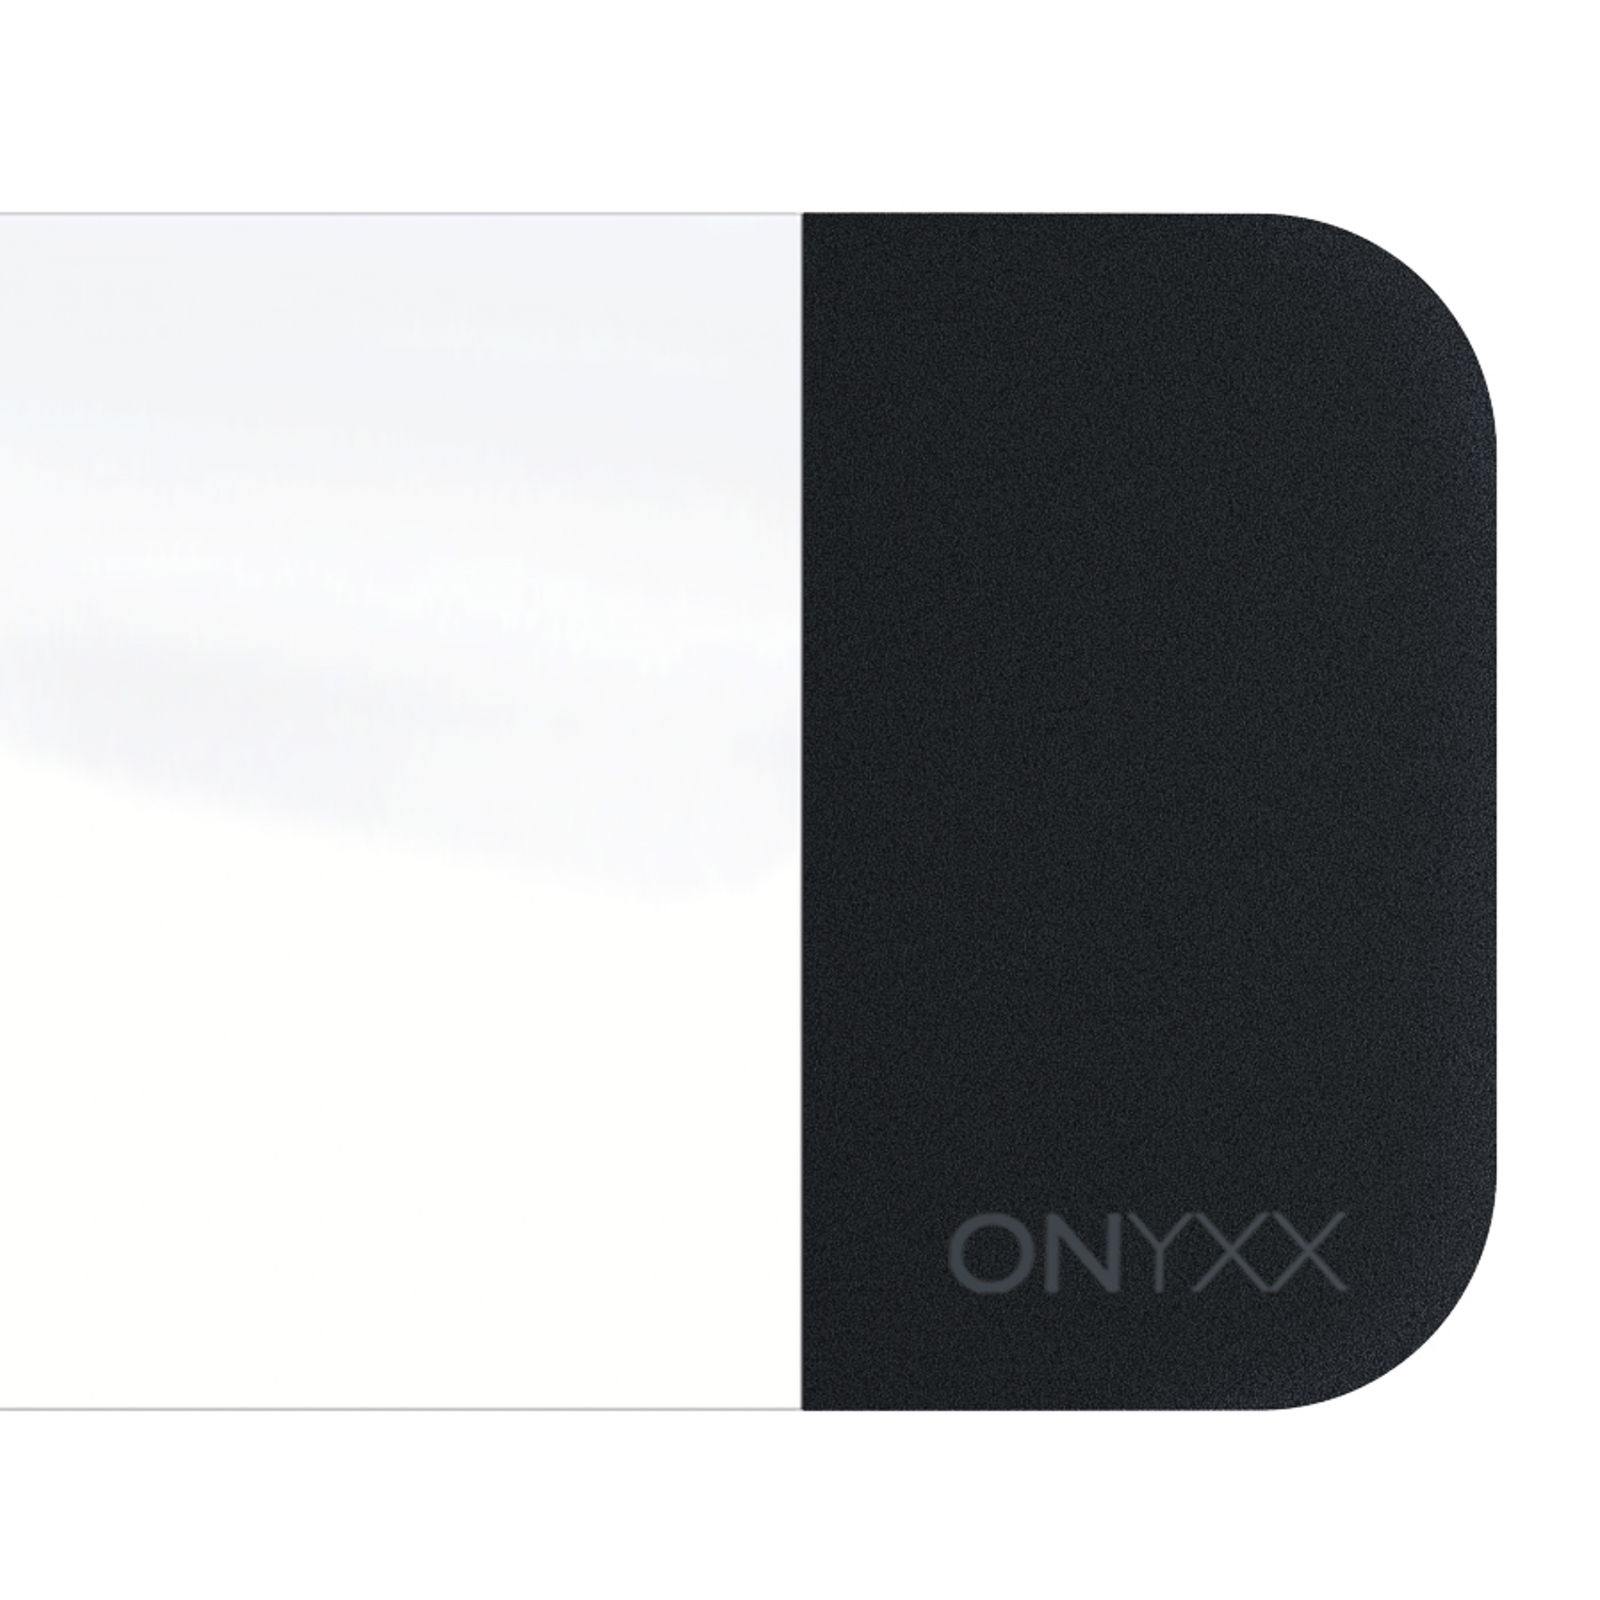 GRIMMEISEN Onyxx Linea Pro hanglamp wit/zwart